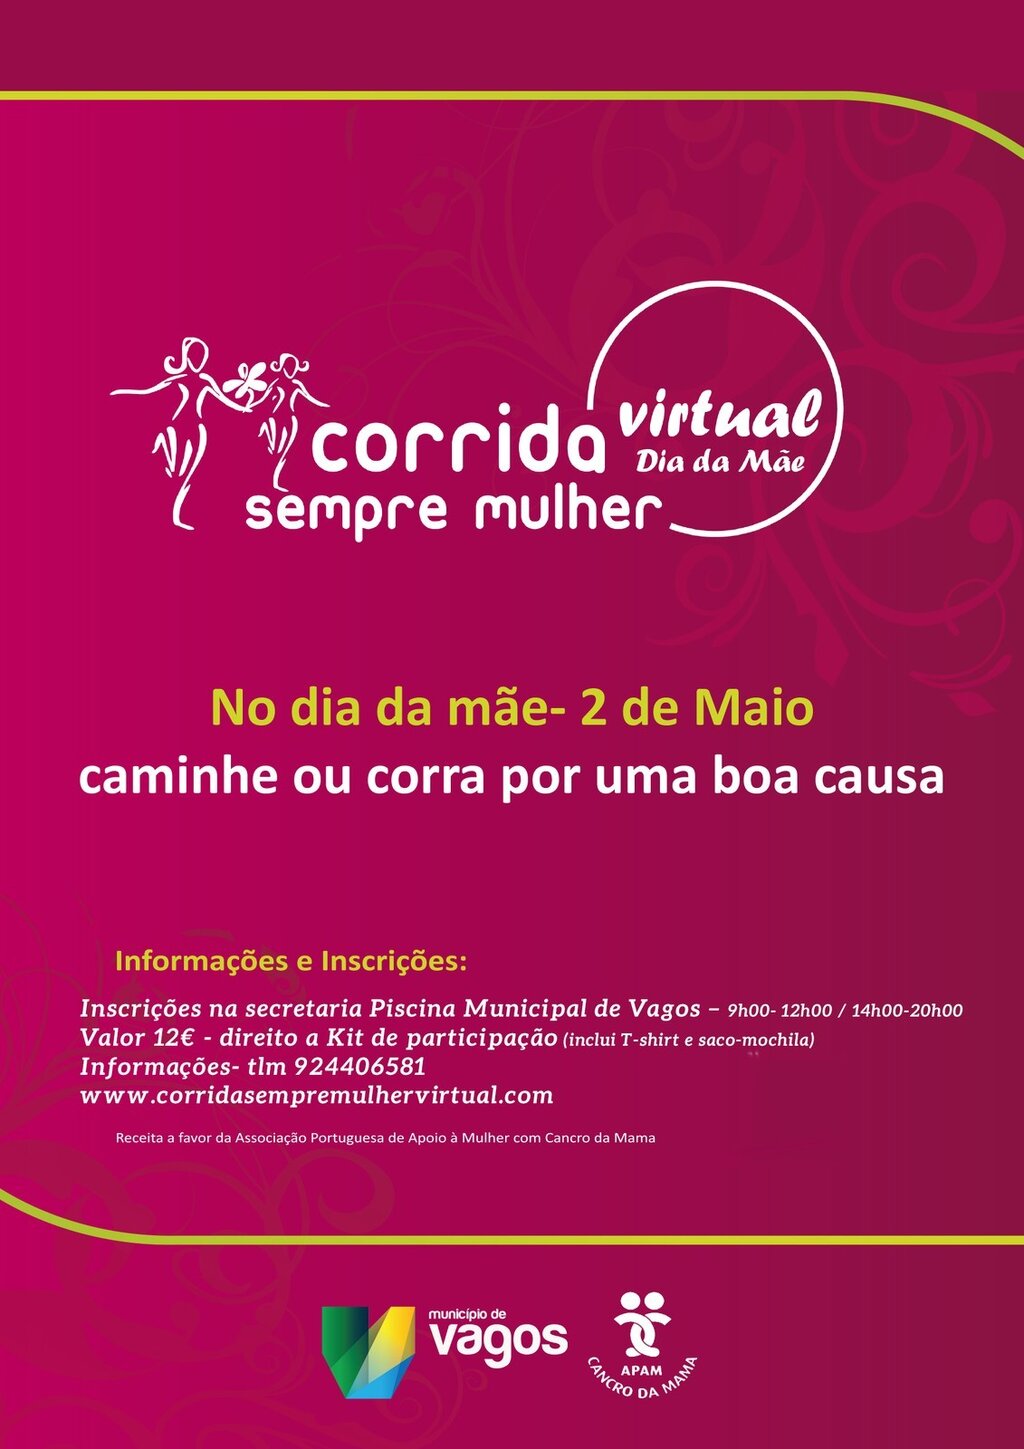 CORRIDA SEMPRE MULHER VIRTUAL DO DIA DA MÃE - 2 de Maio 2021